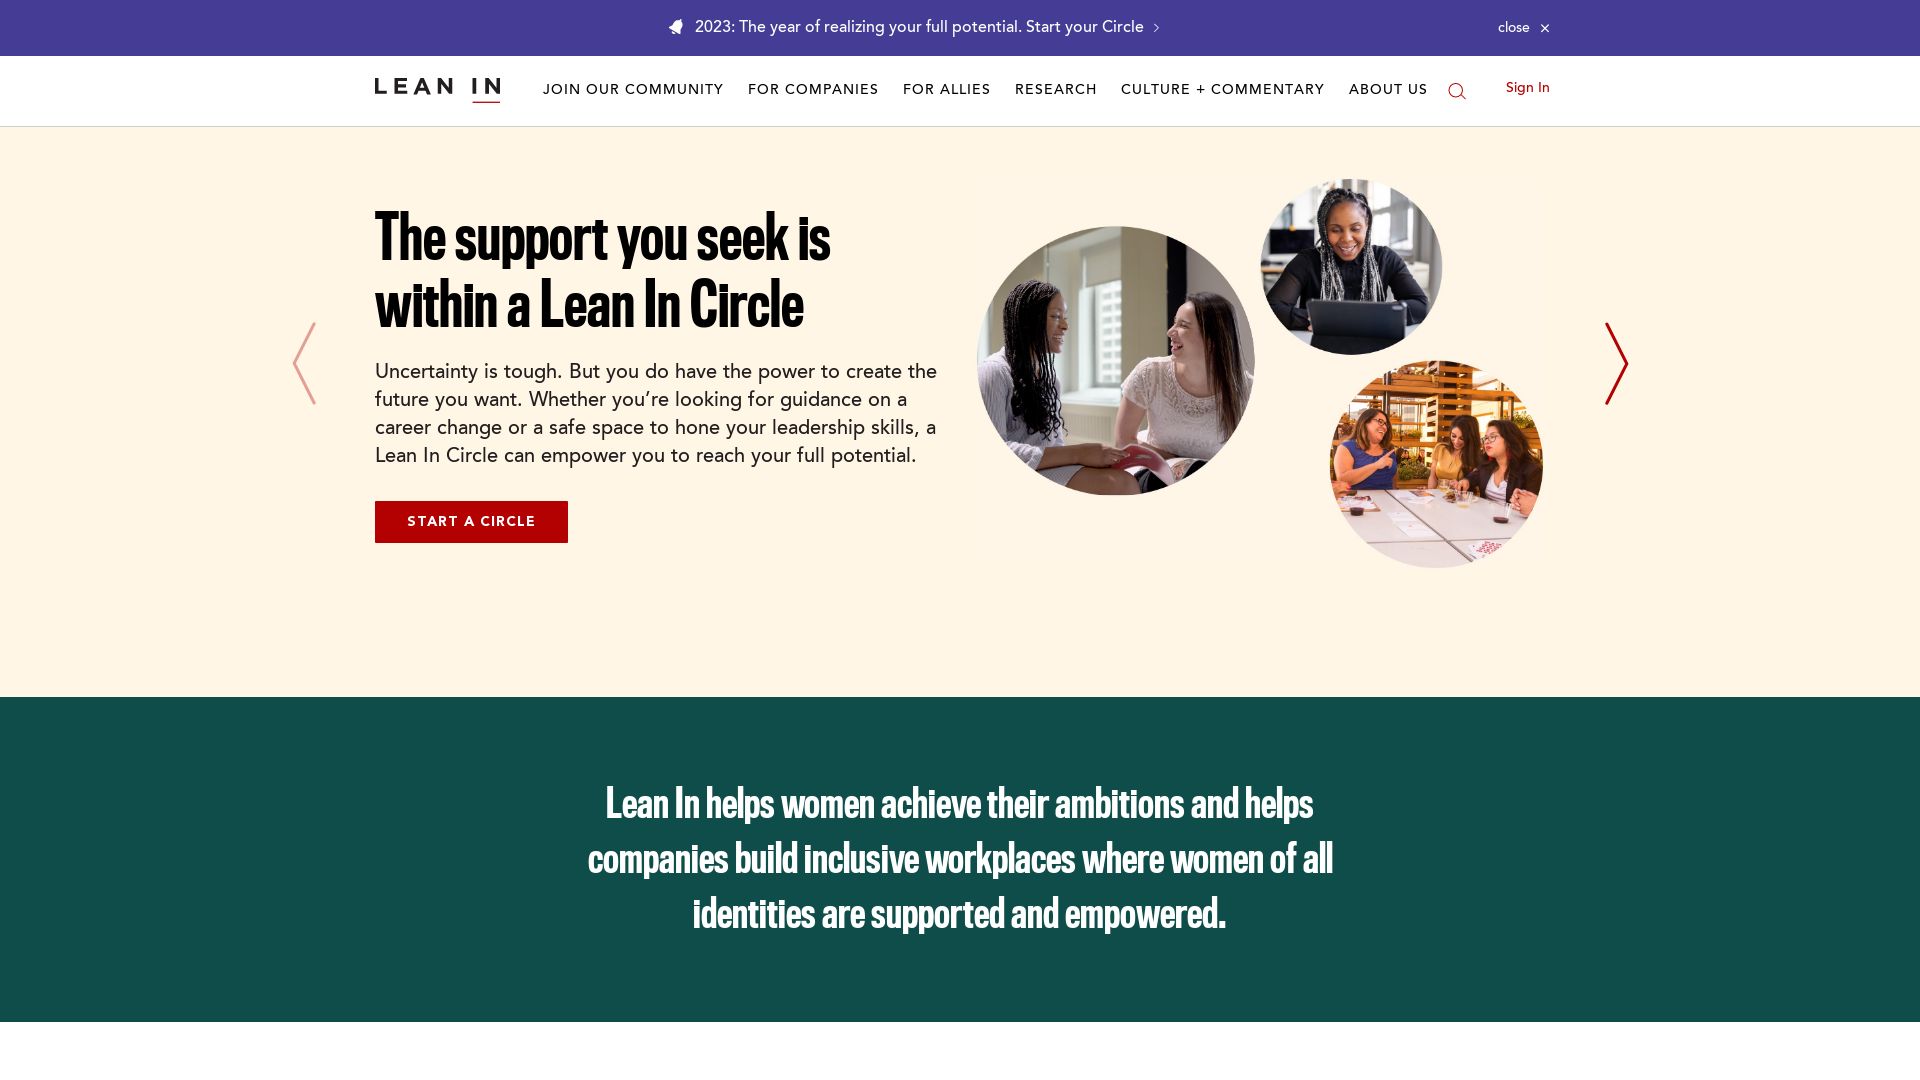 État du site web leanin.org est   EN LIGNE